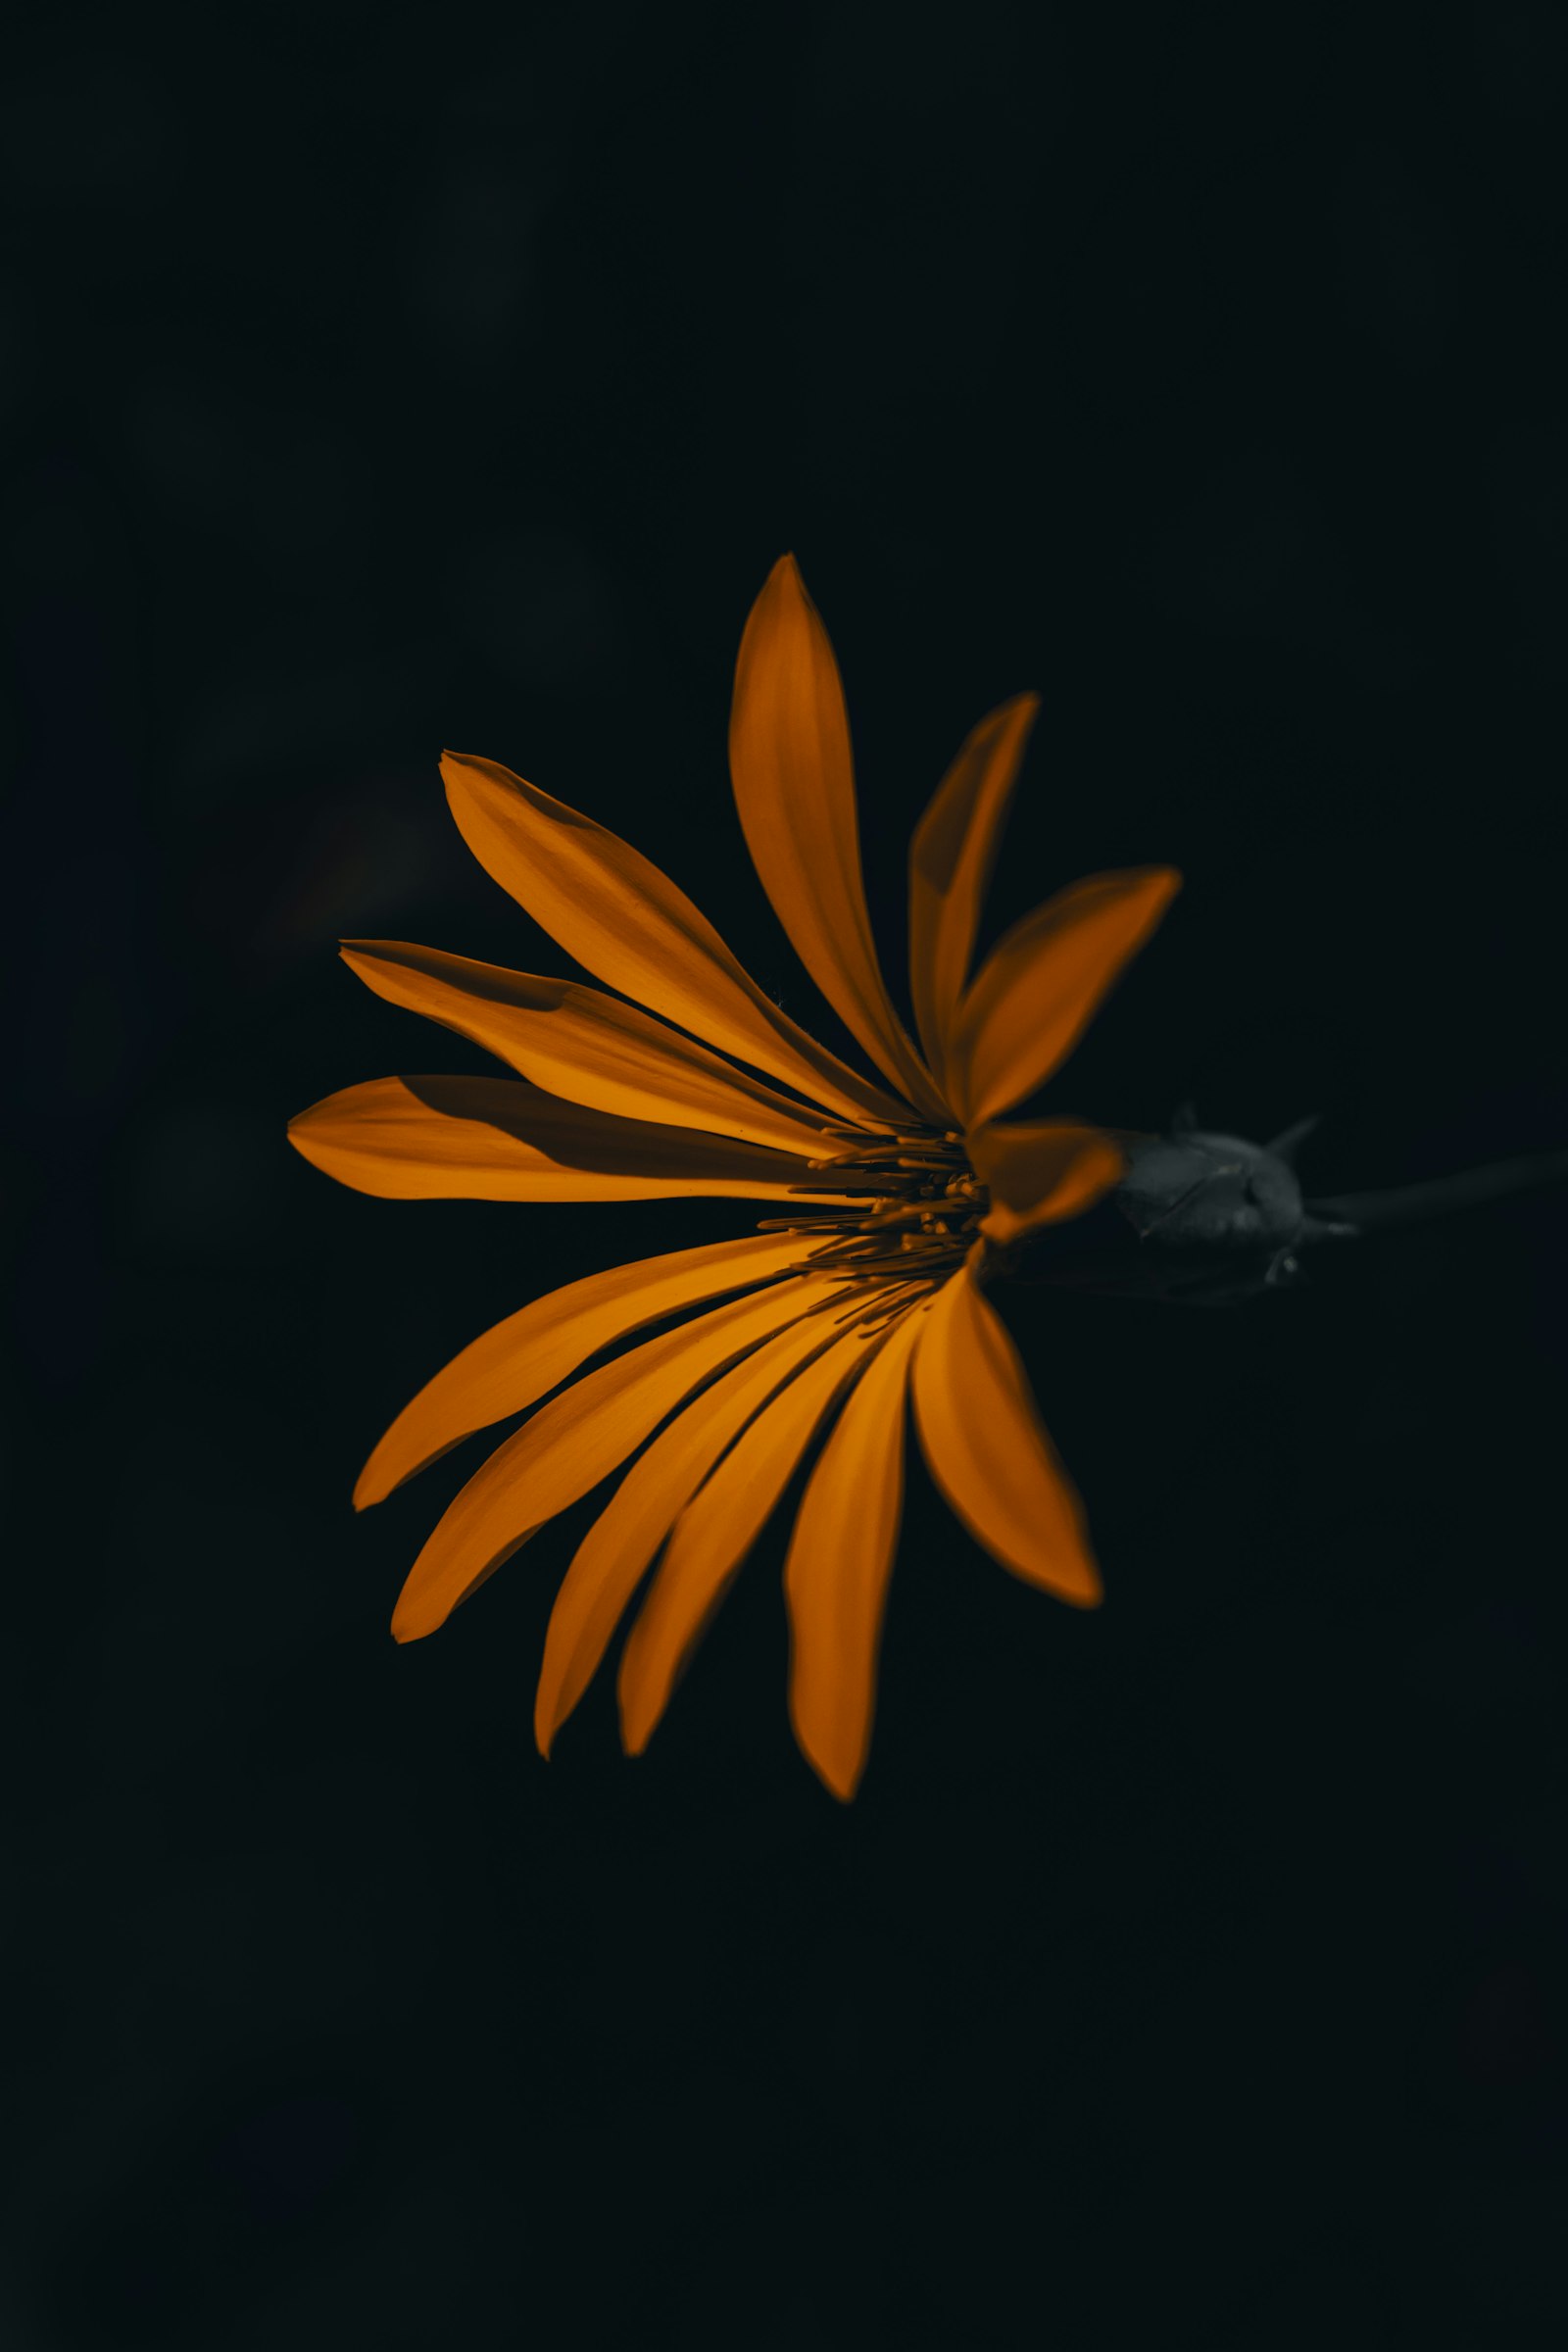 Nikon D5300 + Nikon AF Nikkor 50mm F1.8D sample photo. Orange flower blooming in photography